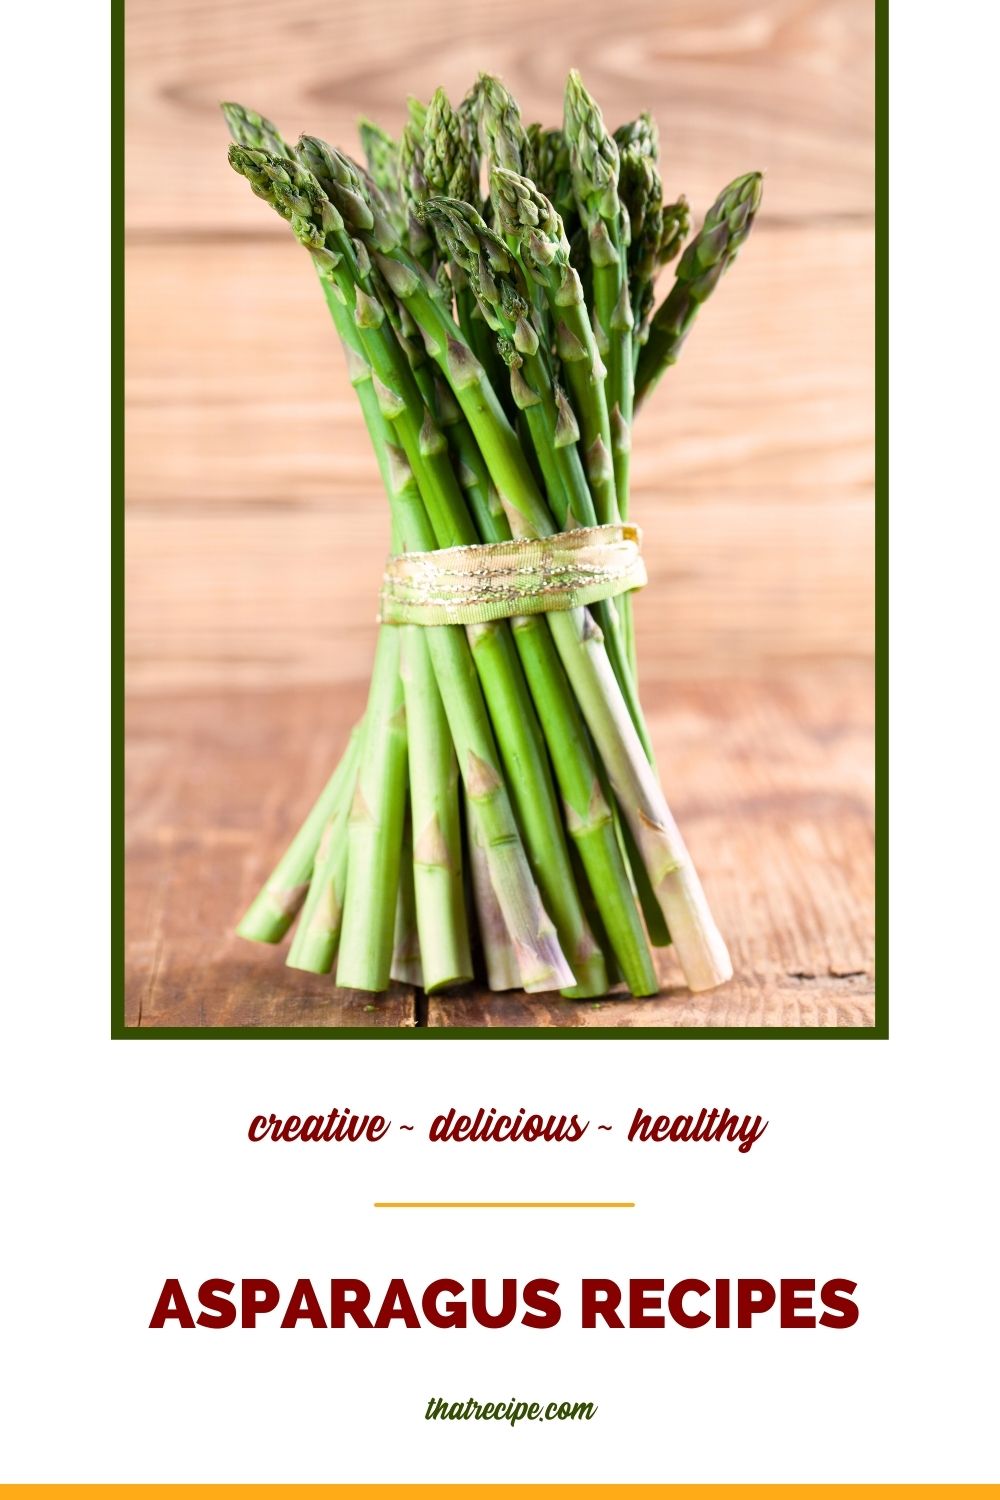 stalks of fresh asparagus with text overlay "asparagus recipes"